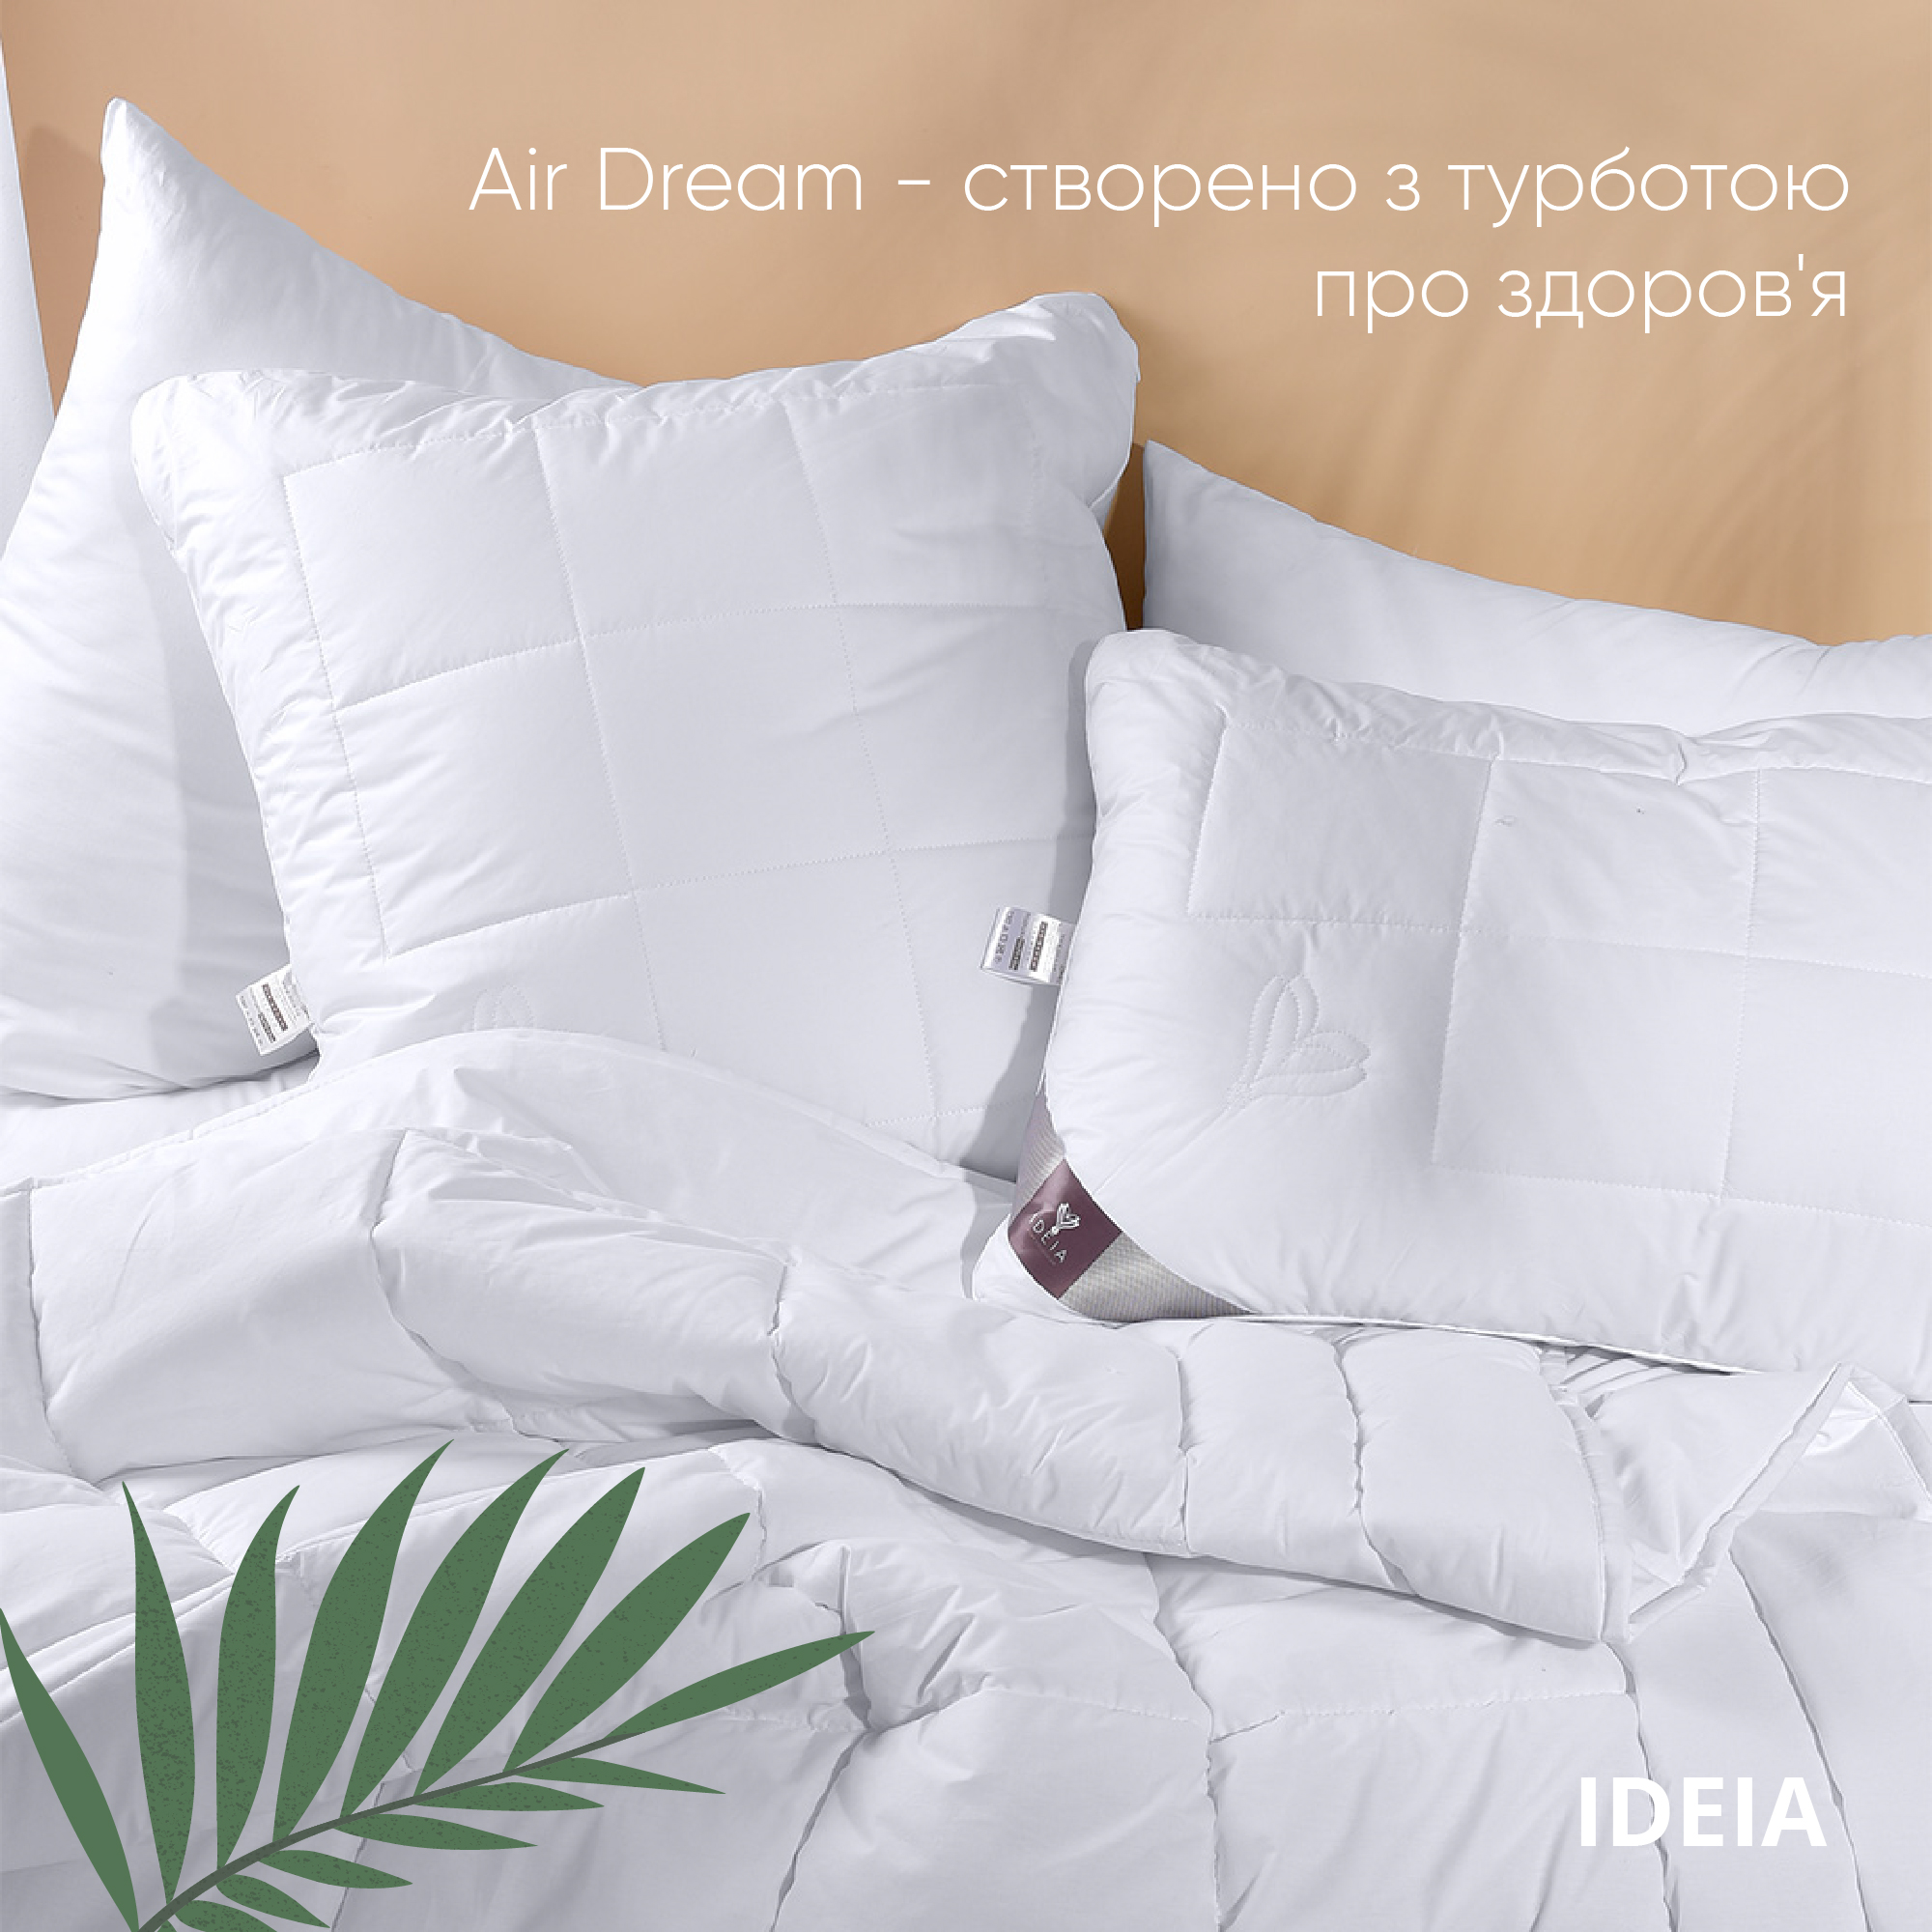 Одеяло Ideia Air Dream Premium зимнее, 210х175, белый (8-11698) - фото 5